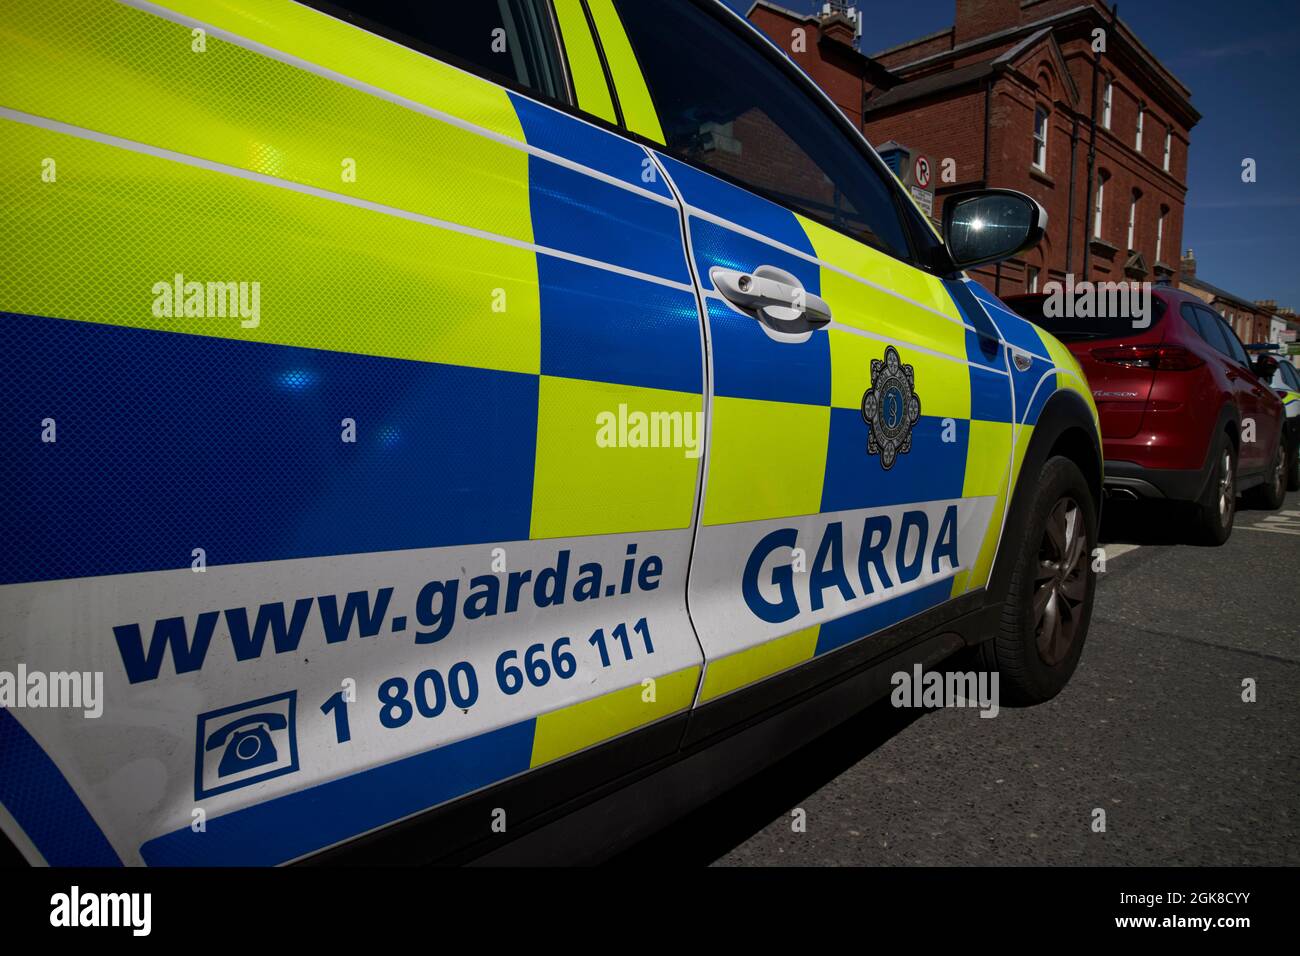 garda irish police patrol vehicle dublin, republic of ireland Stock Photo